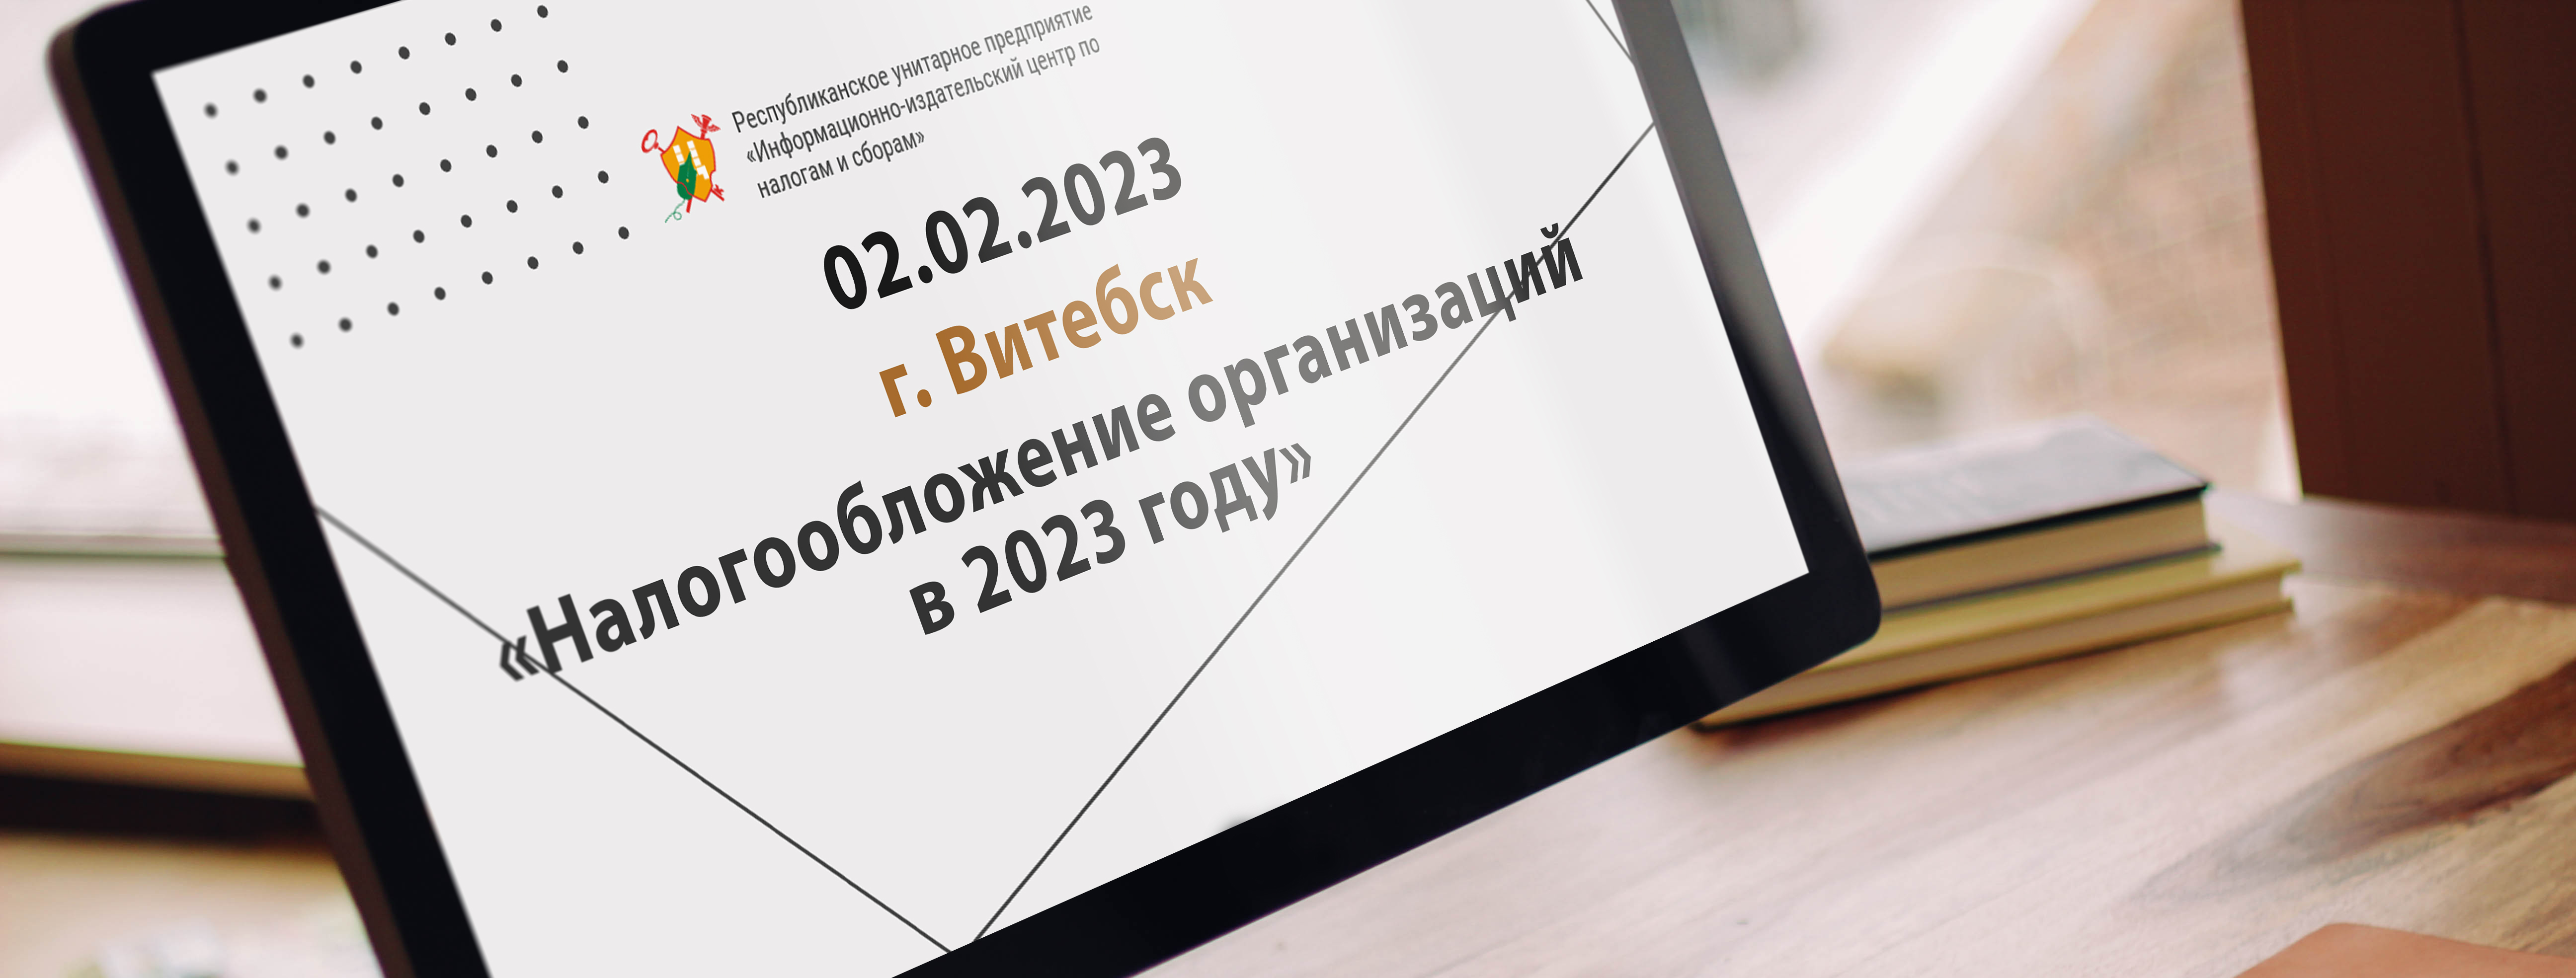 02.02.2023 г. Витебск «Налогообложение организаций в 2023 году»